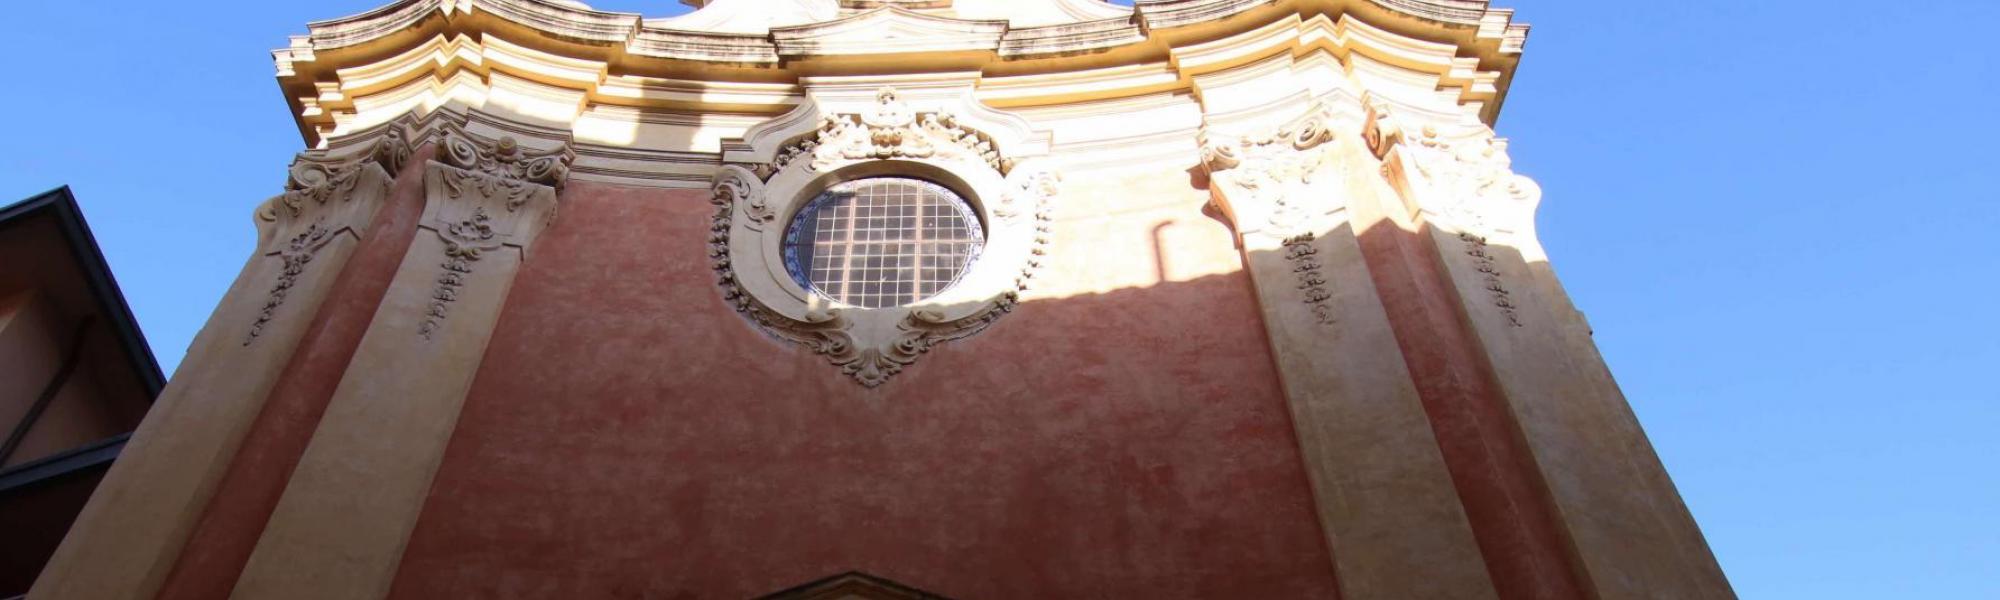 Facciata dal basso- Chiesa di Sant’Apollonia (A. Matteucci)